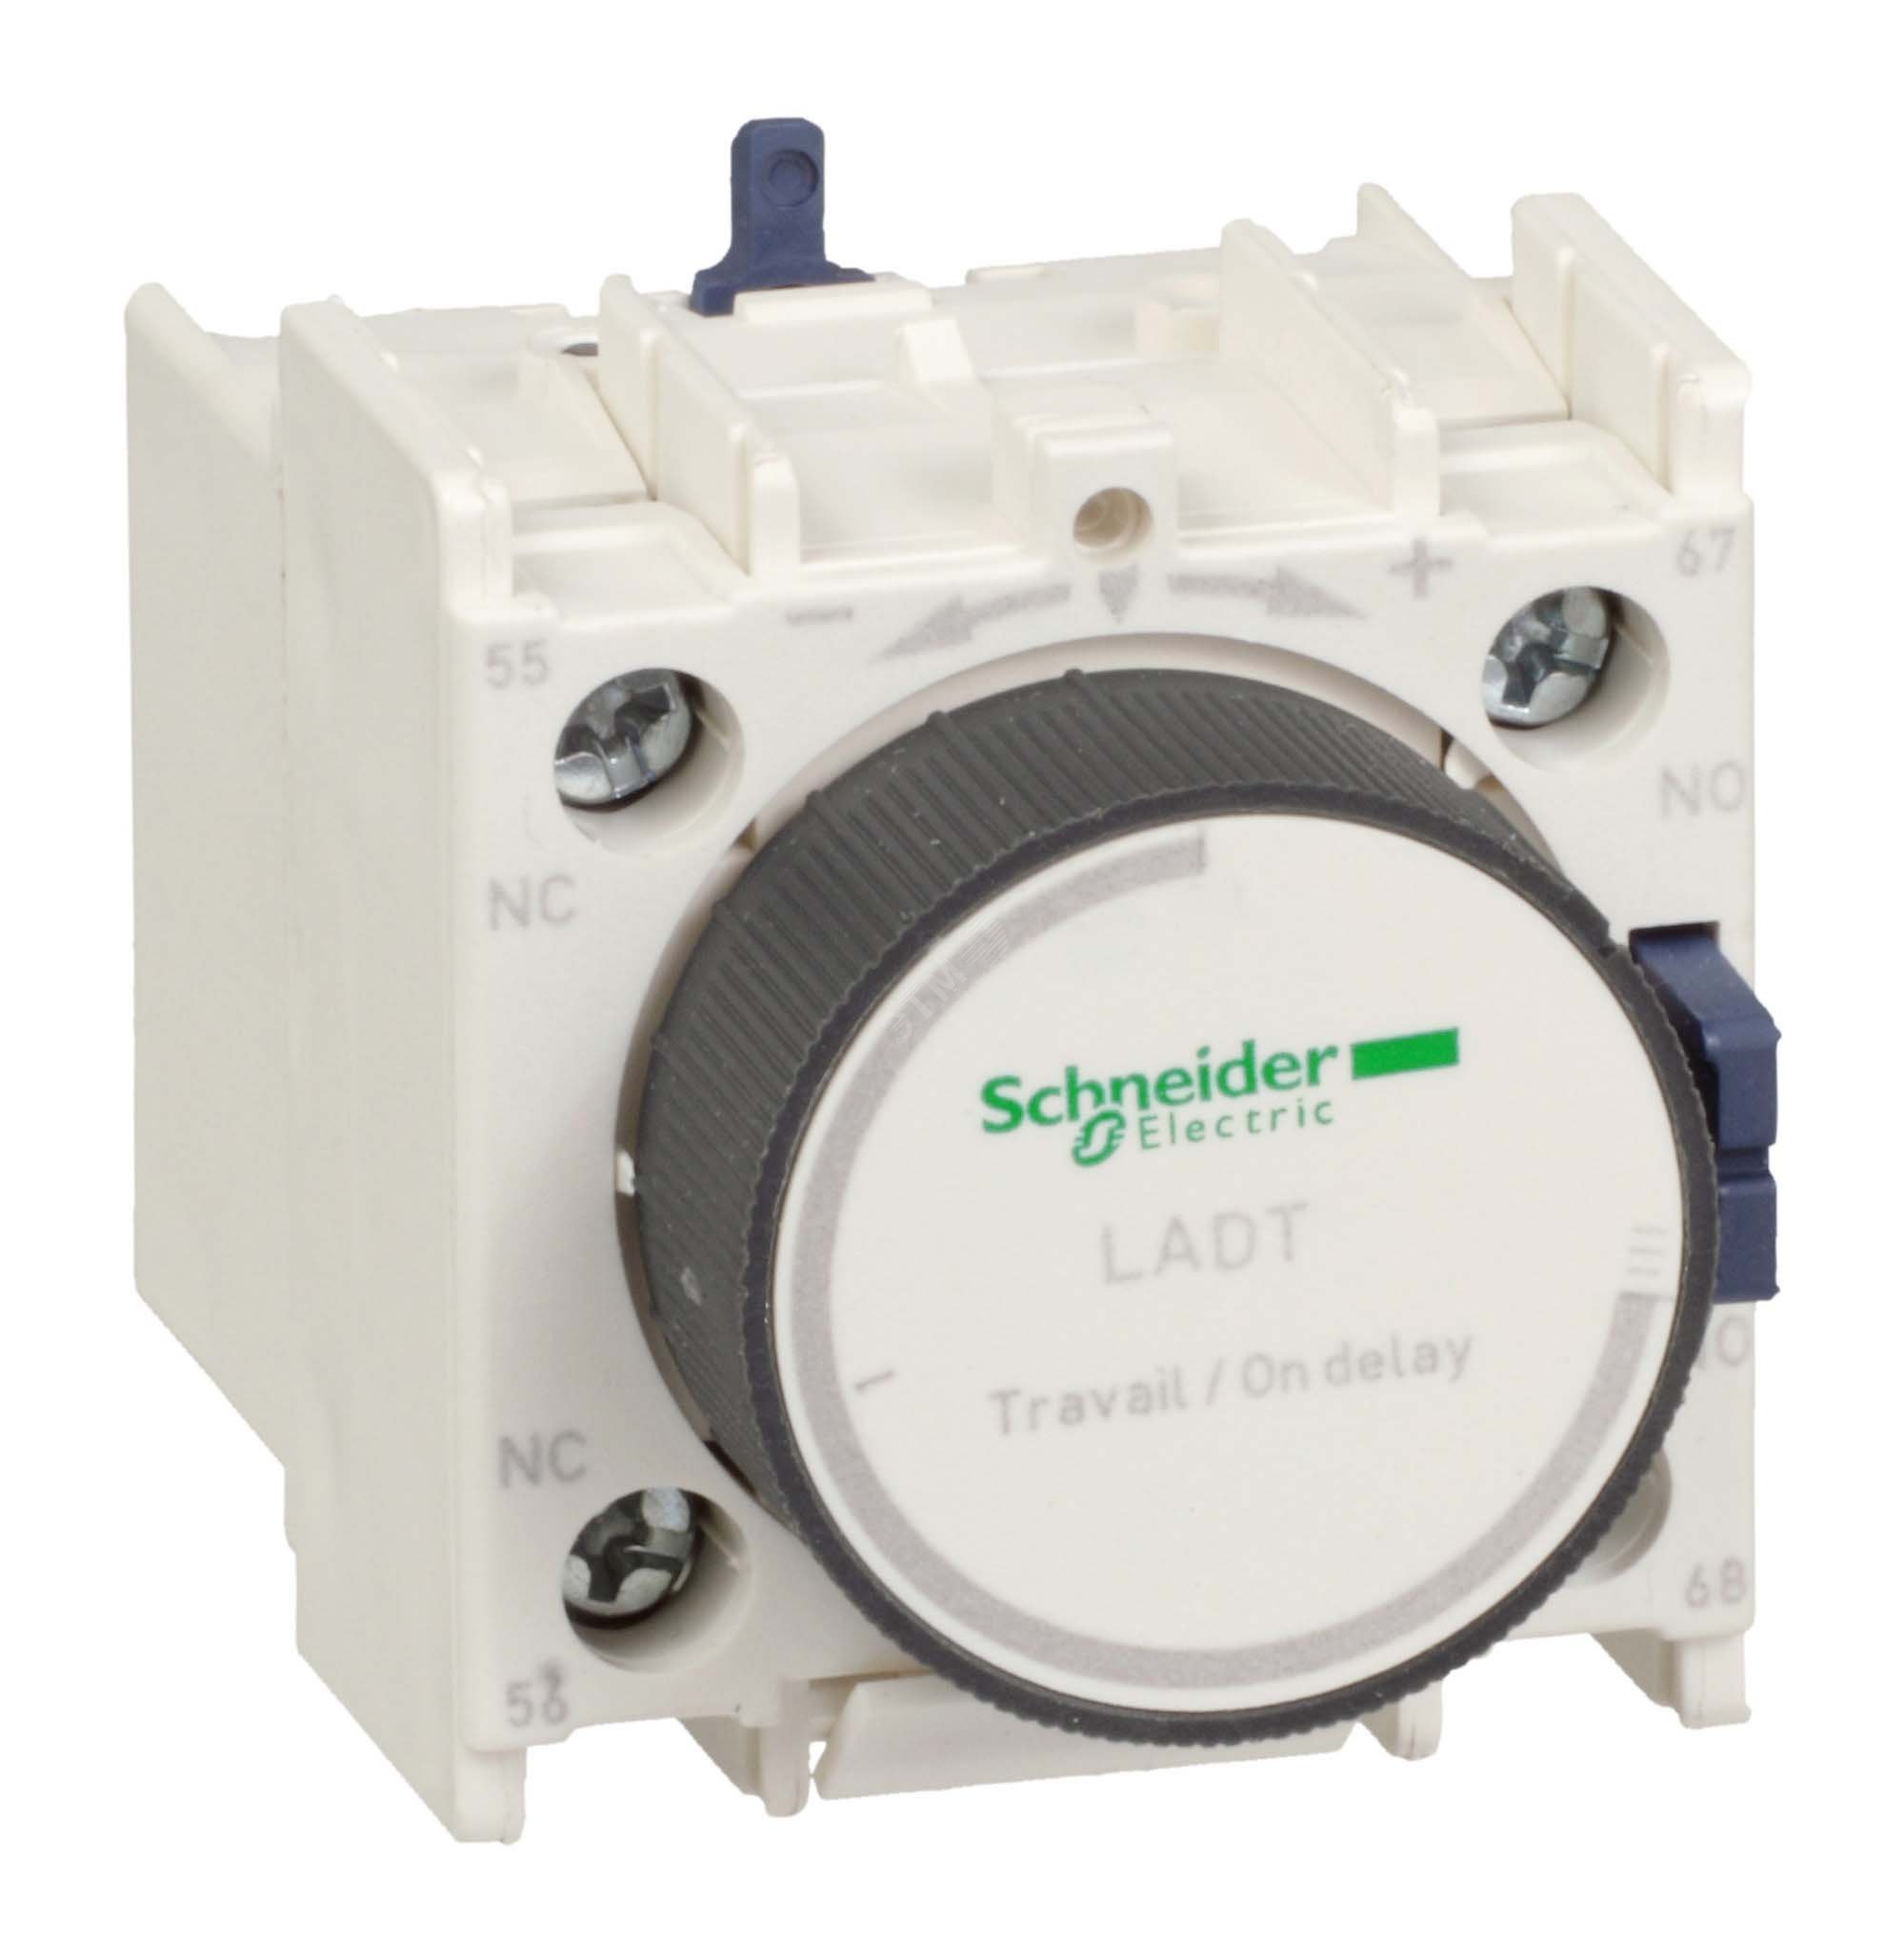 Блок-контакт с задержкой при выключении 0.1-3 сек LADR0 Schneider Electric - превью